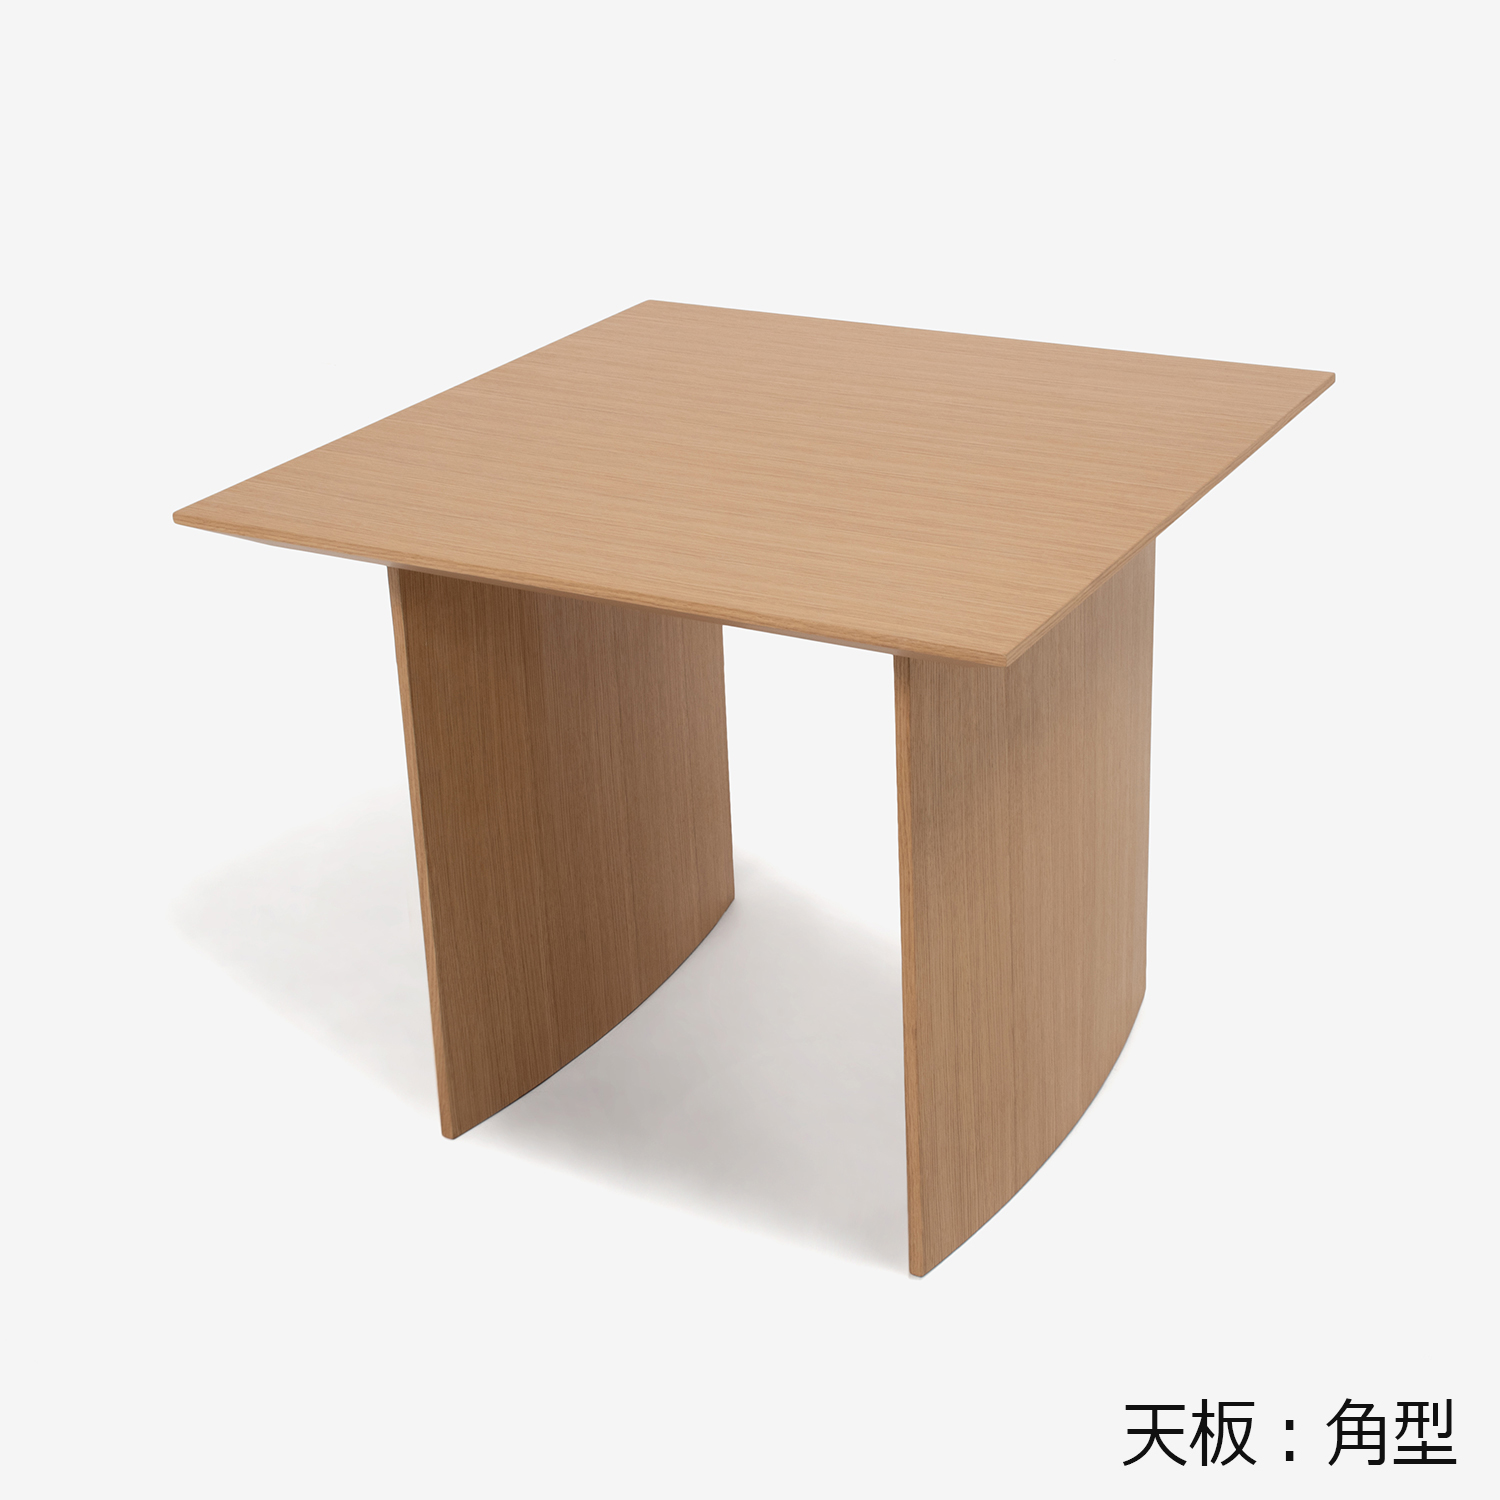 ダイニングテーブル「ジャスト」幅85cm オーク材ホワイトオーク色 天板角型 パネル脚【決算セールのため30%OFF】